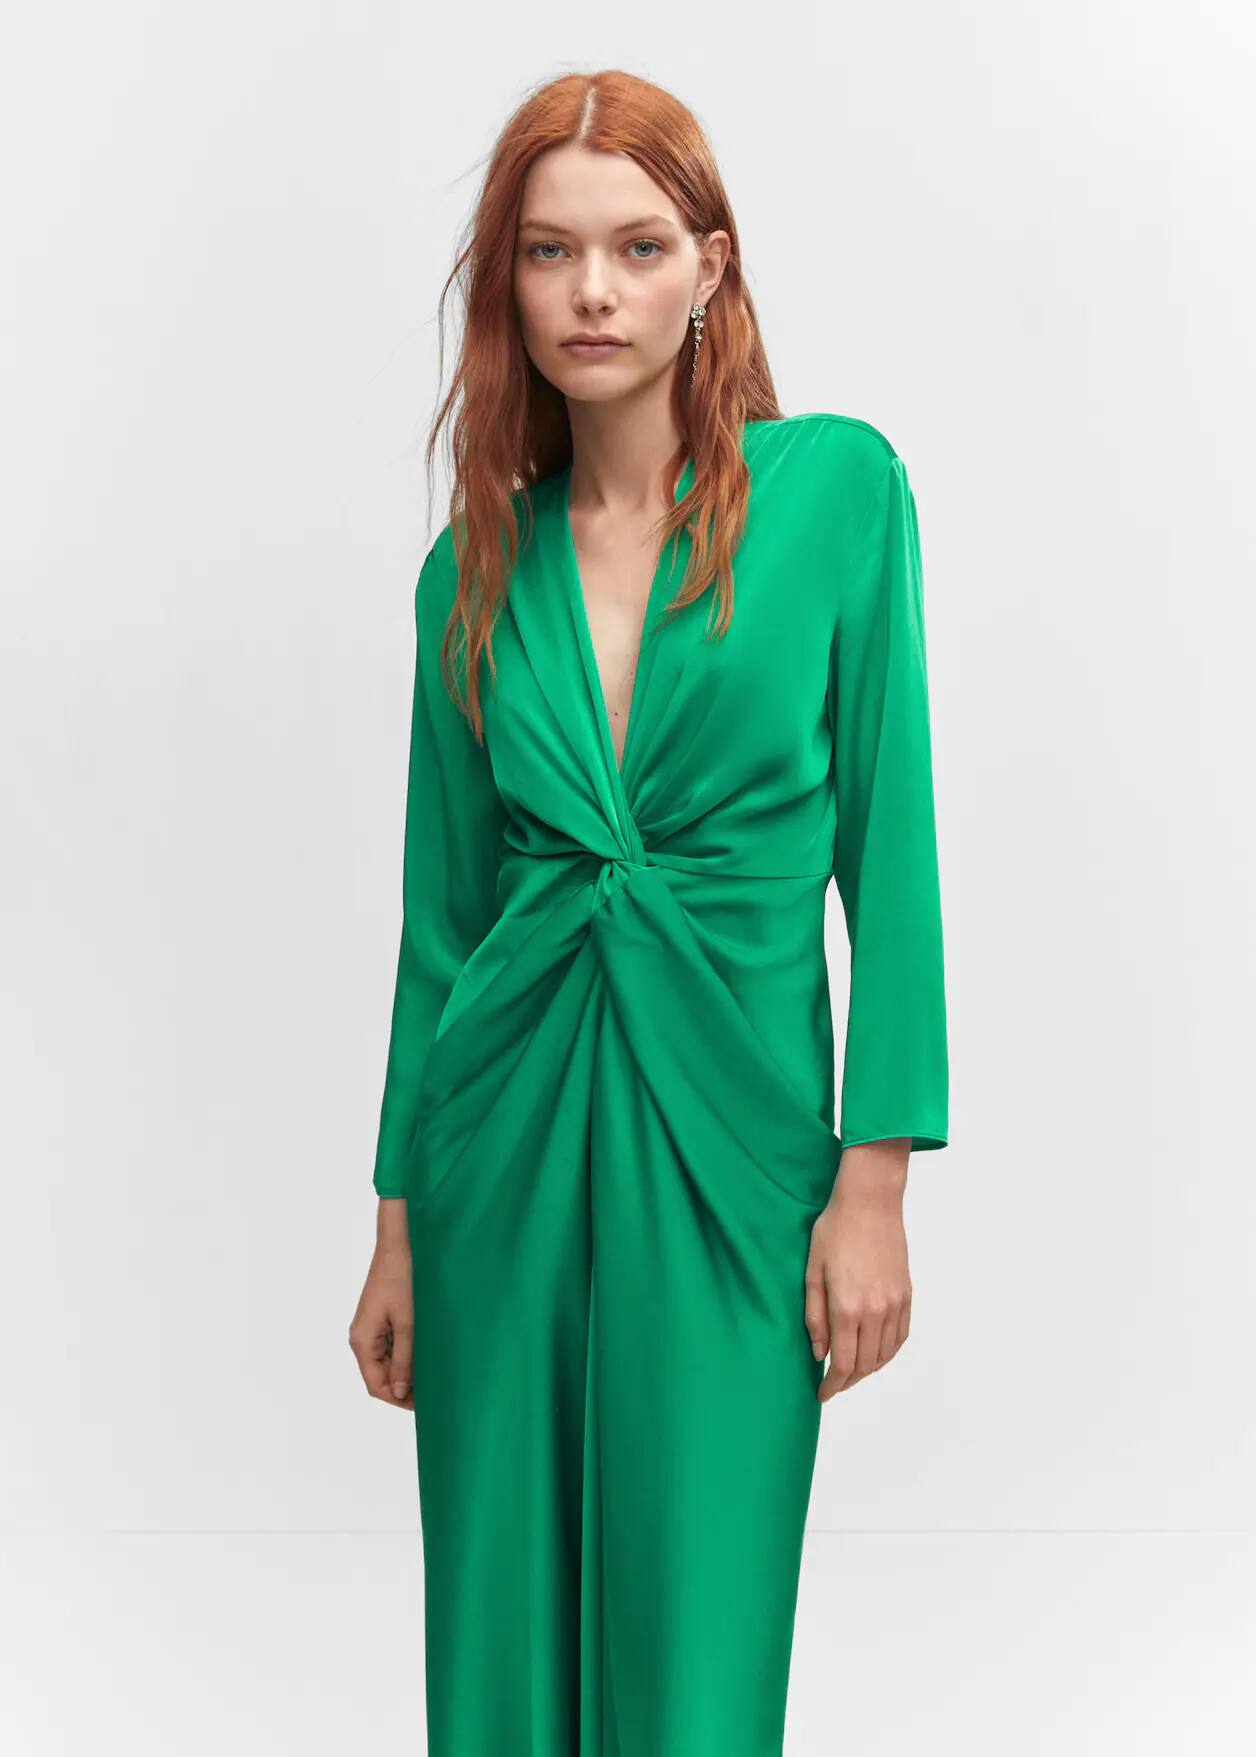 Mujer usando un vestido largo verde.